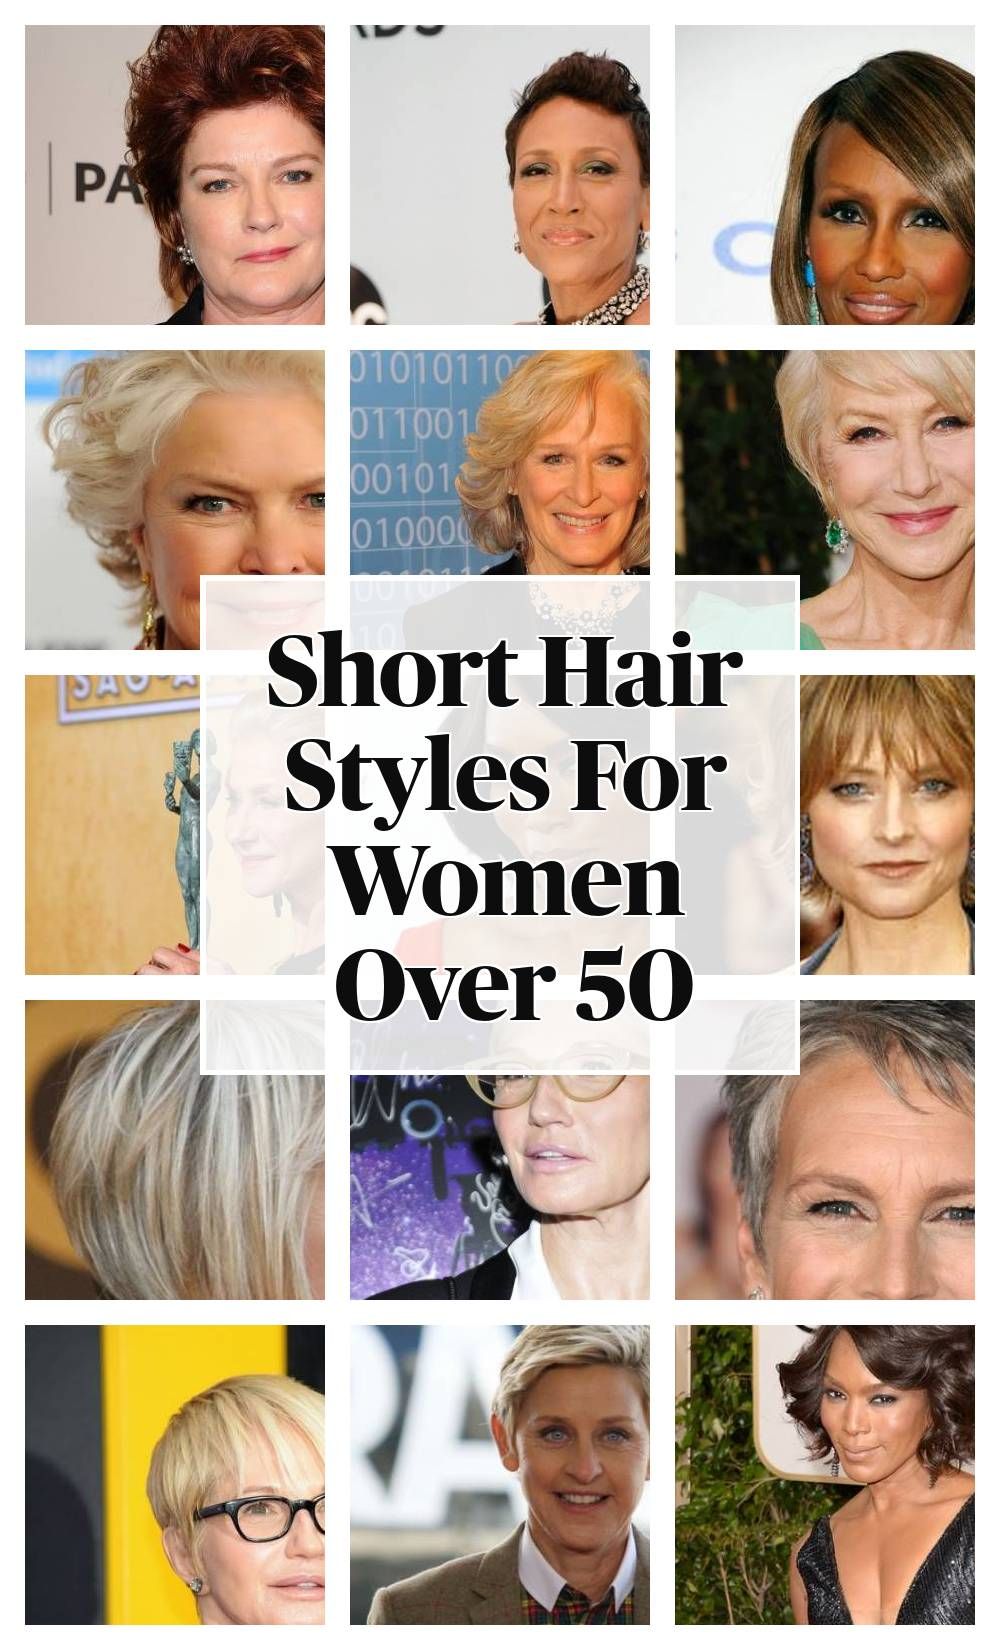 Short Hair Styles For Women Over 50